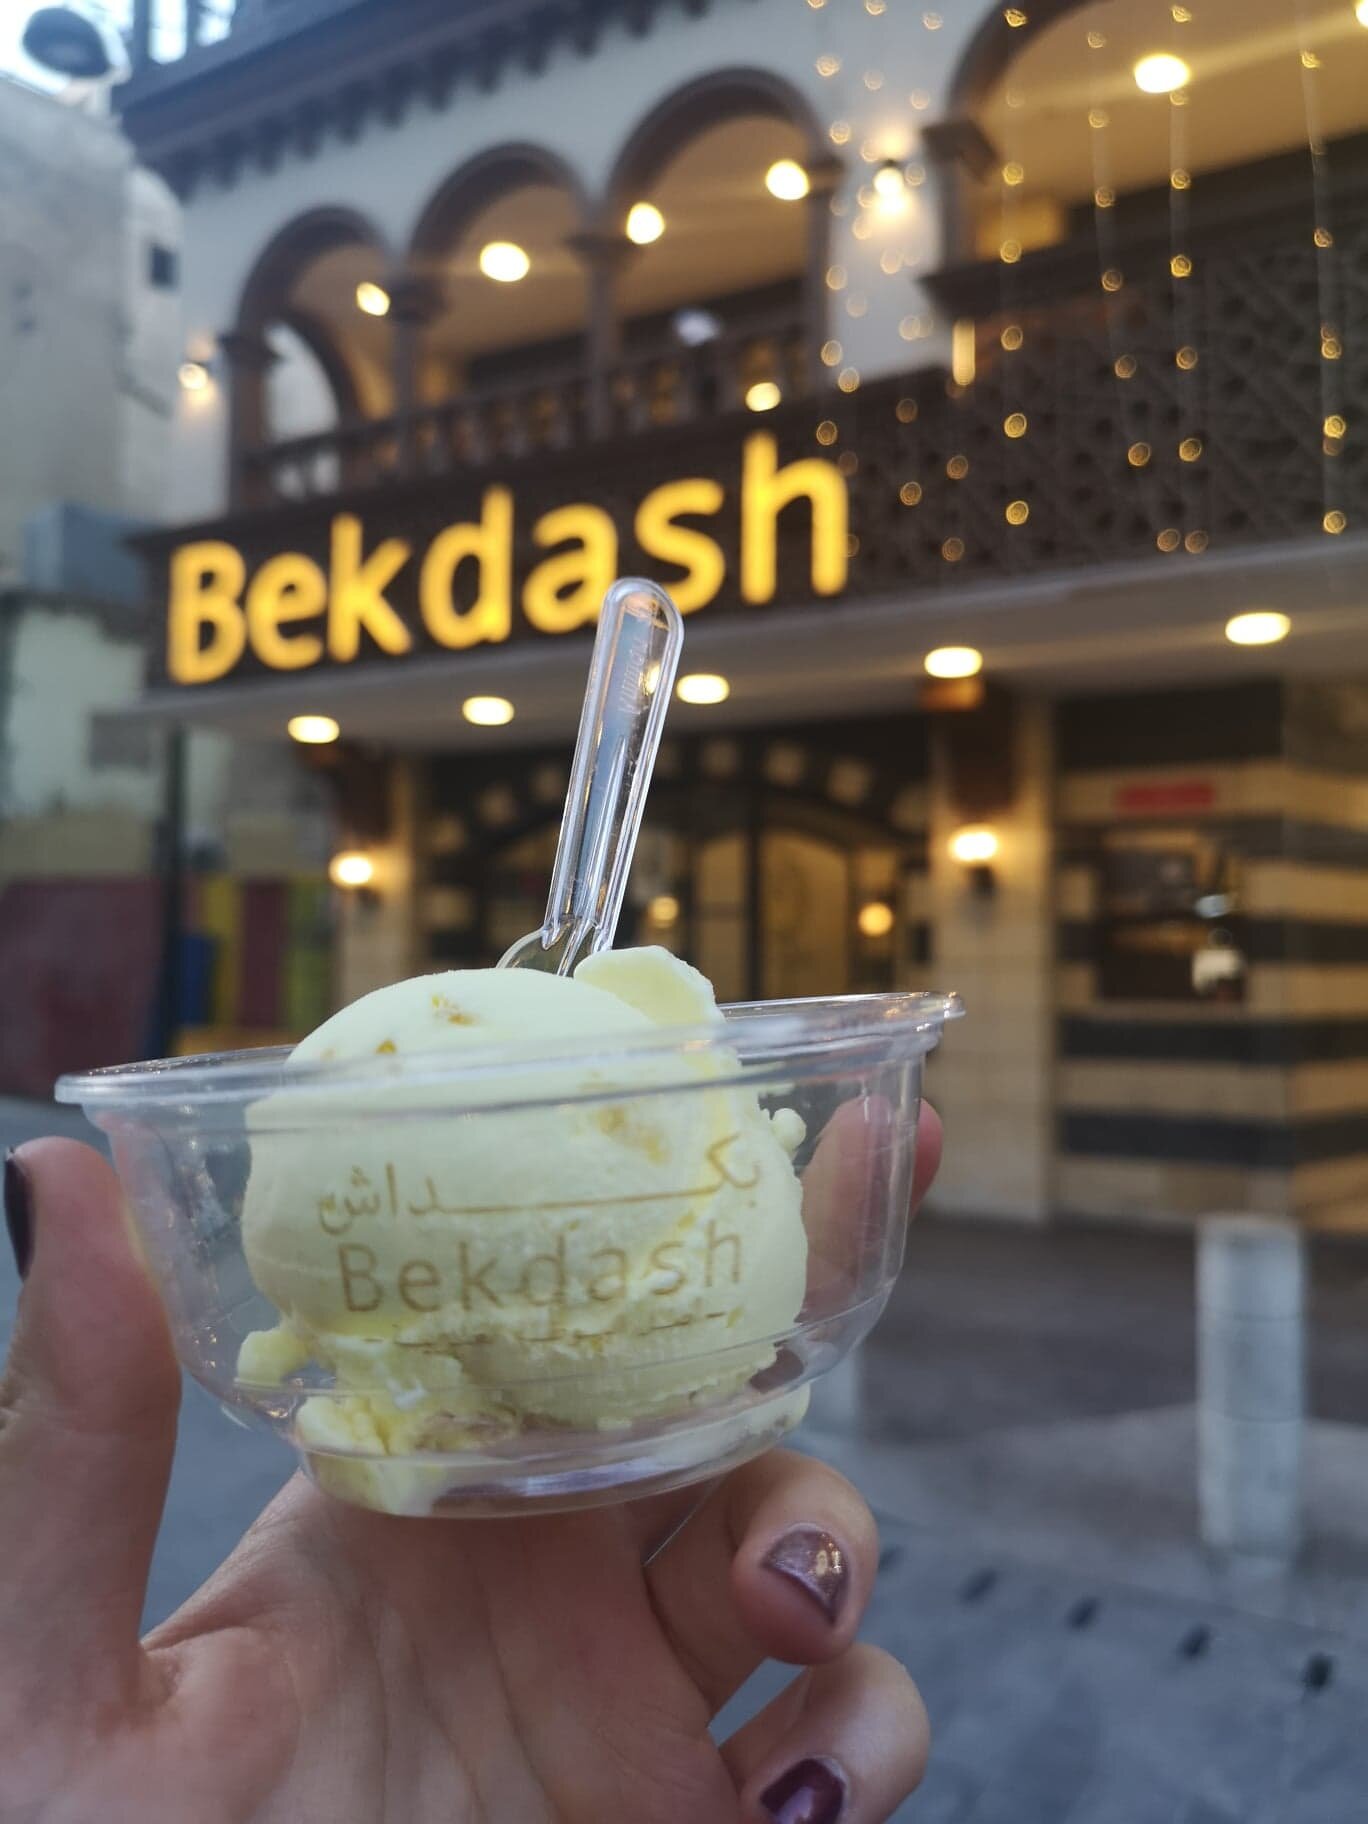 Et une glace vanille de Bekdash